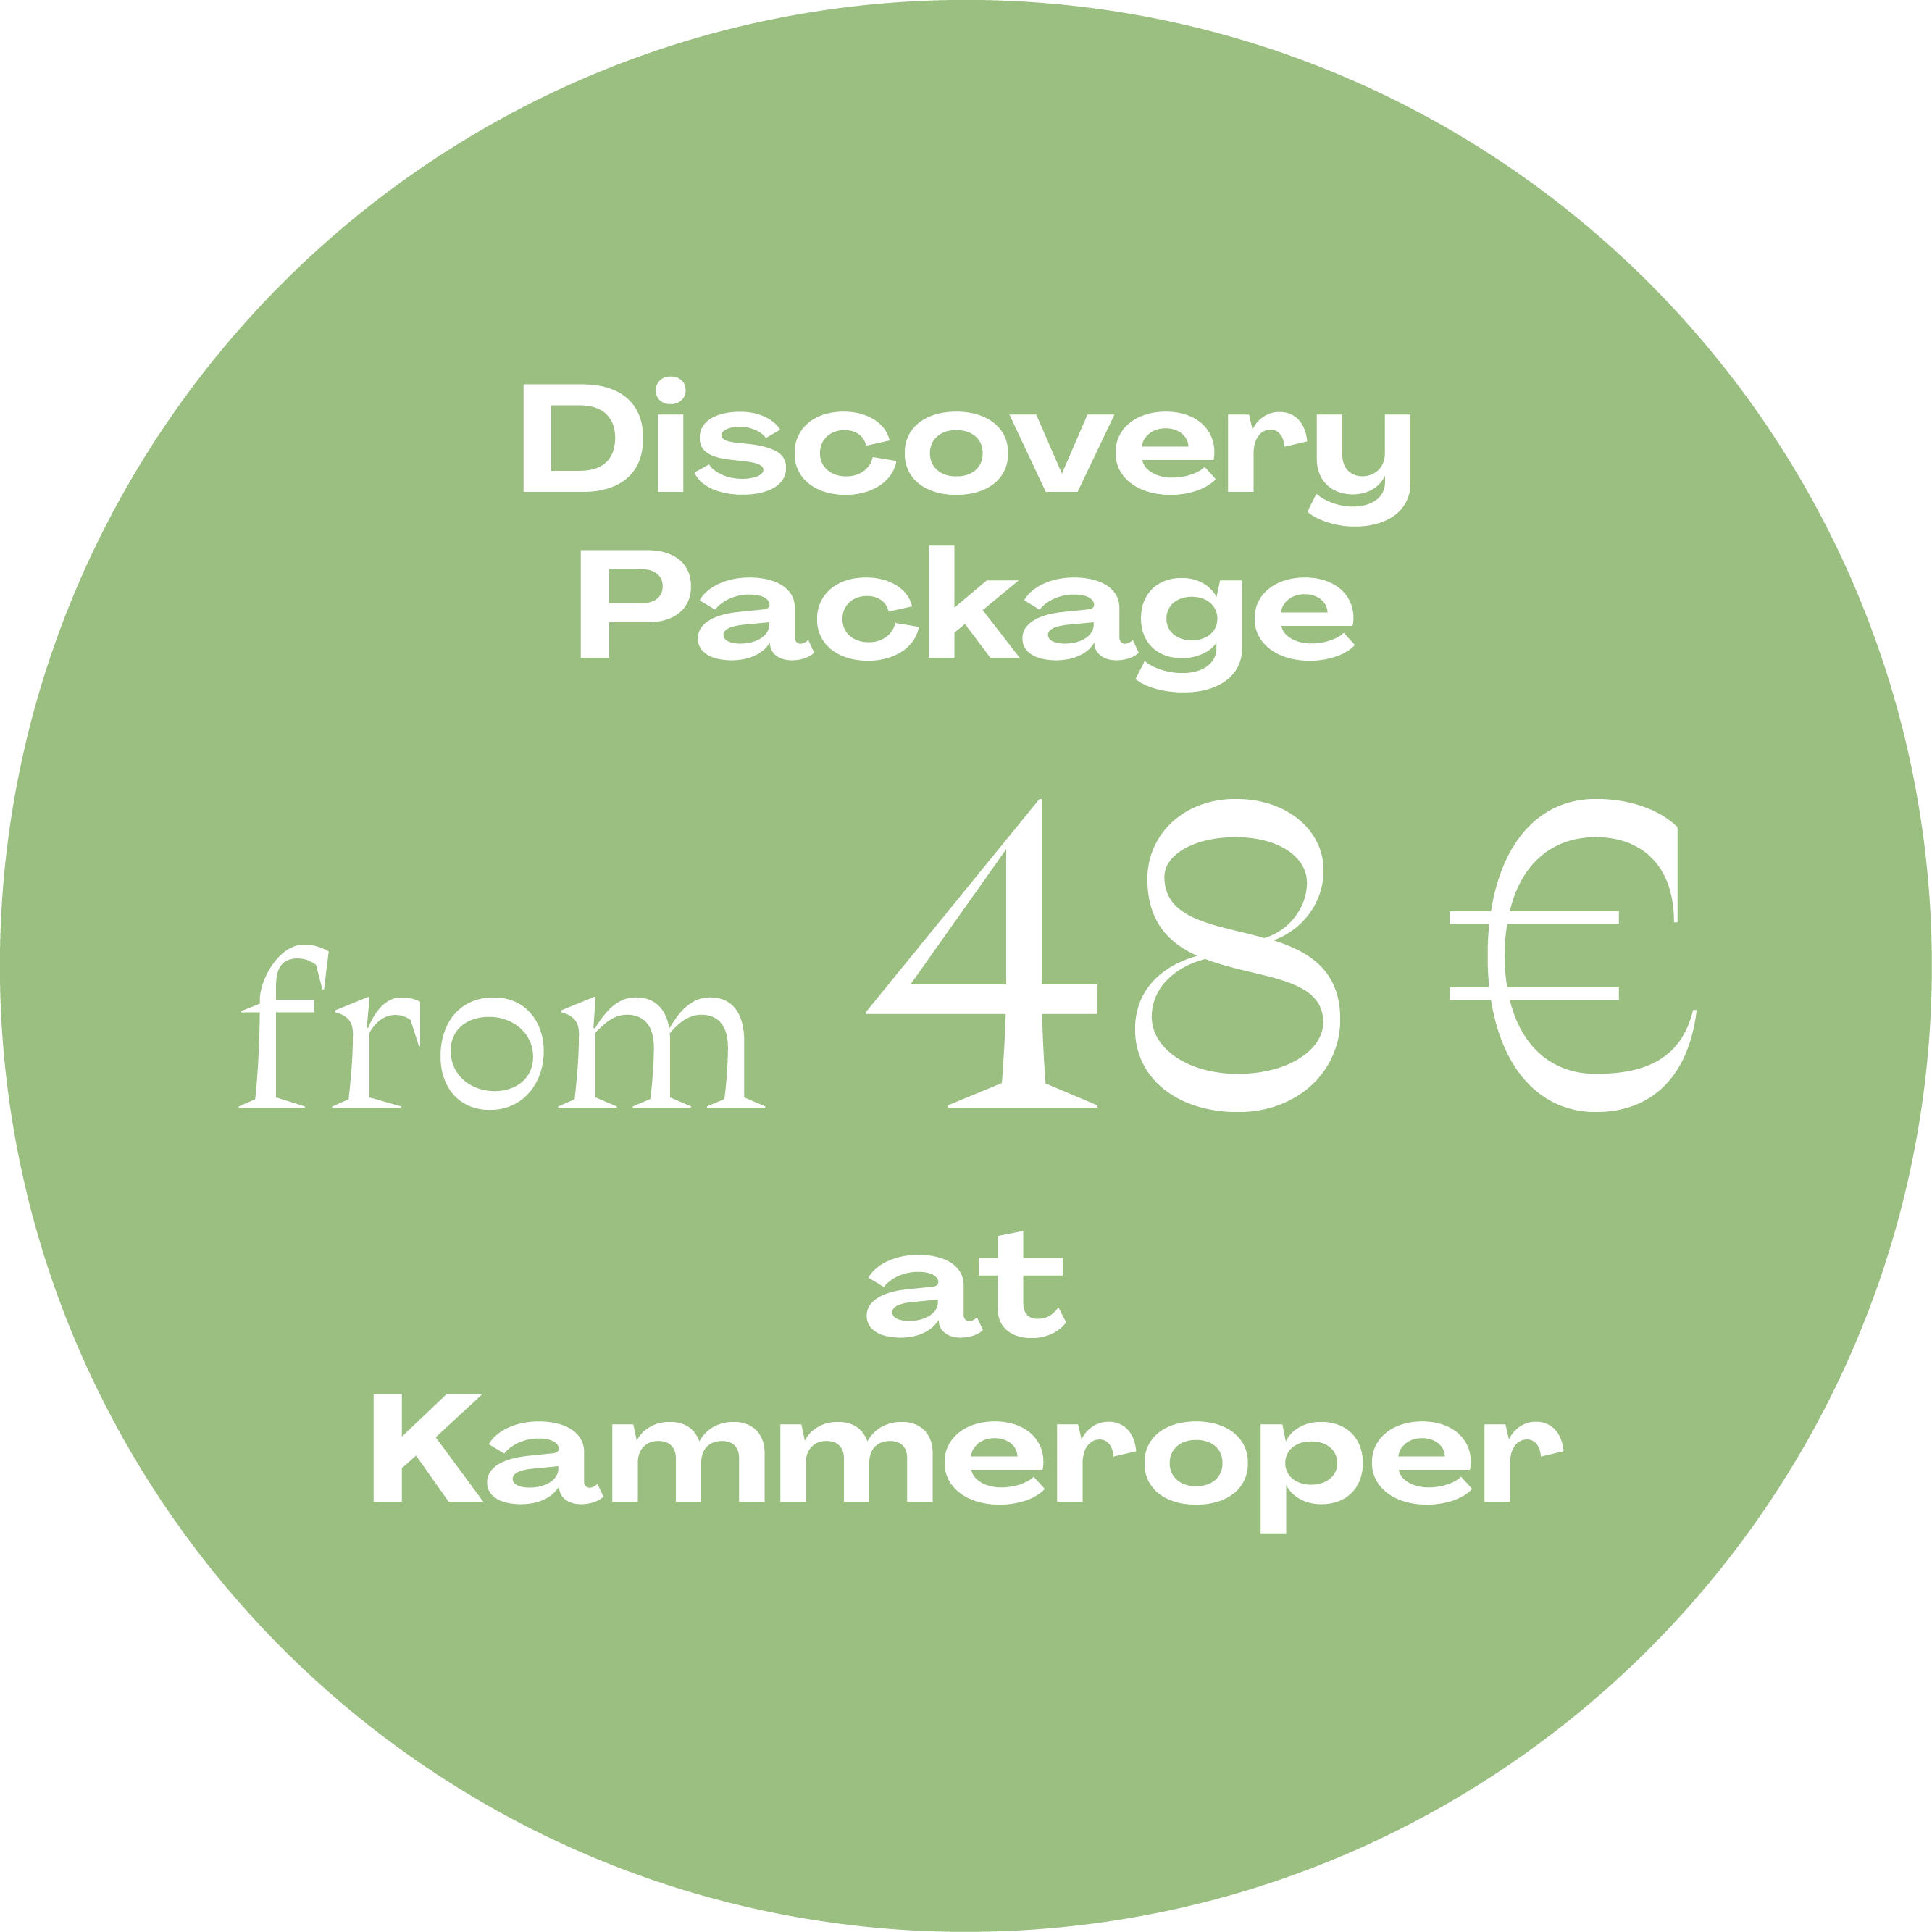 Discovery Package Kammeroper © Vereinigte Bühnen Wien